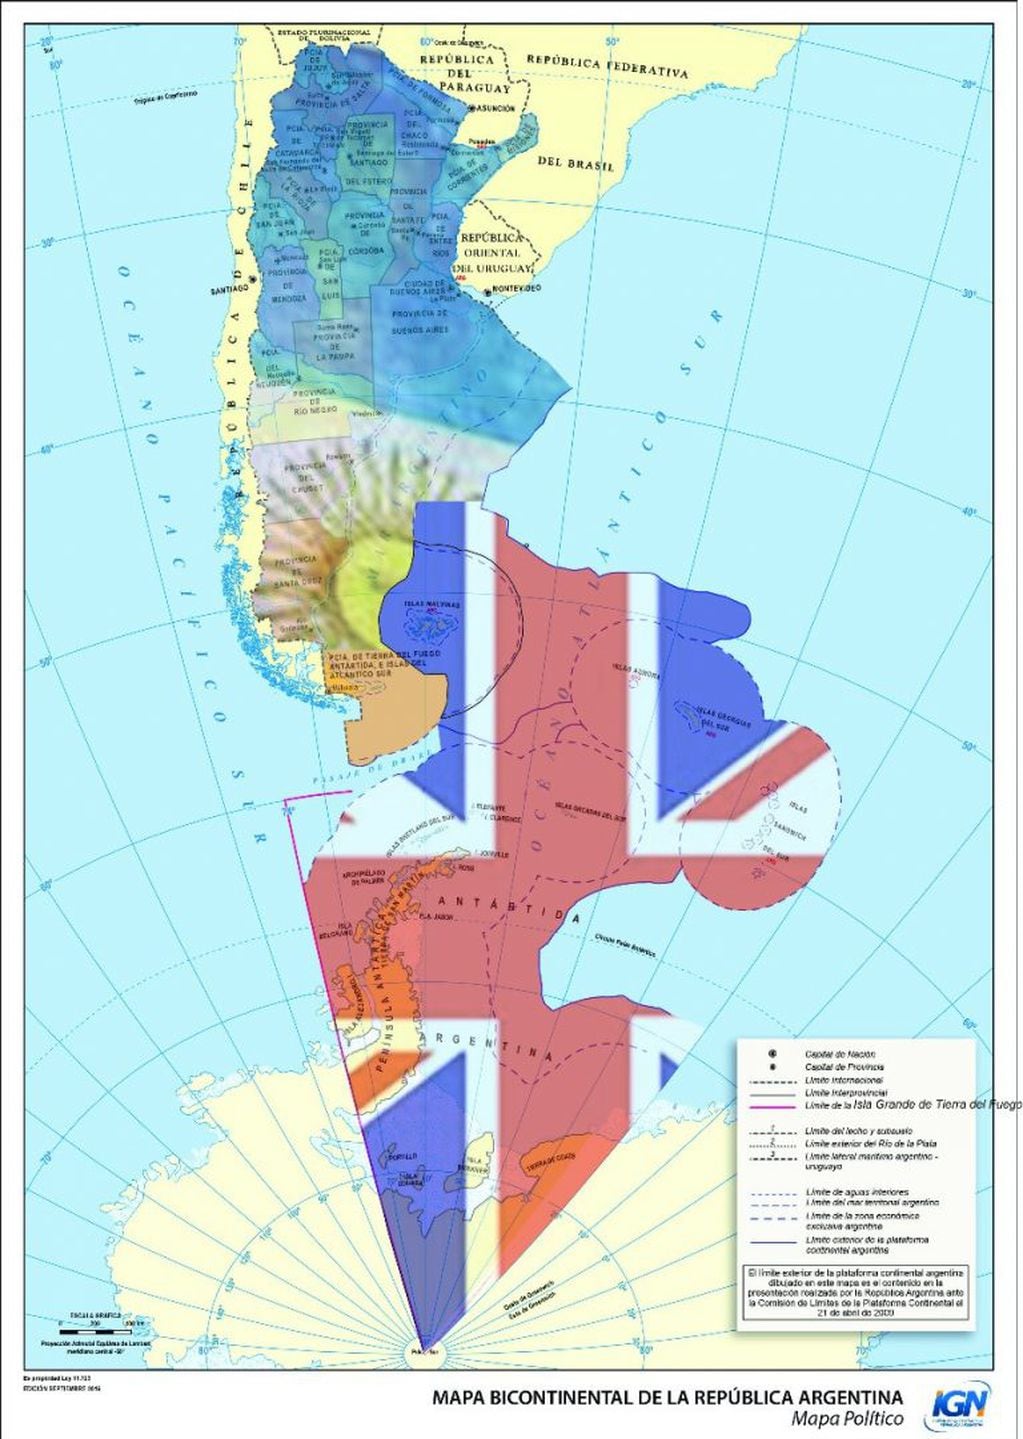 Mapa de la Argentina bicontinental con las zonas usurpada por Reino Unido.